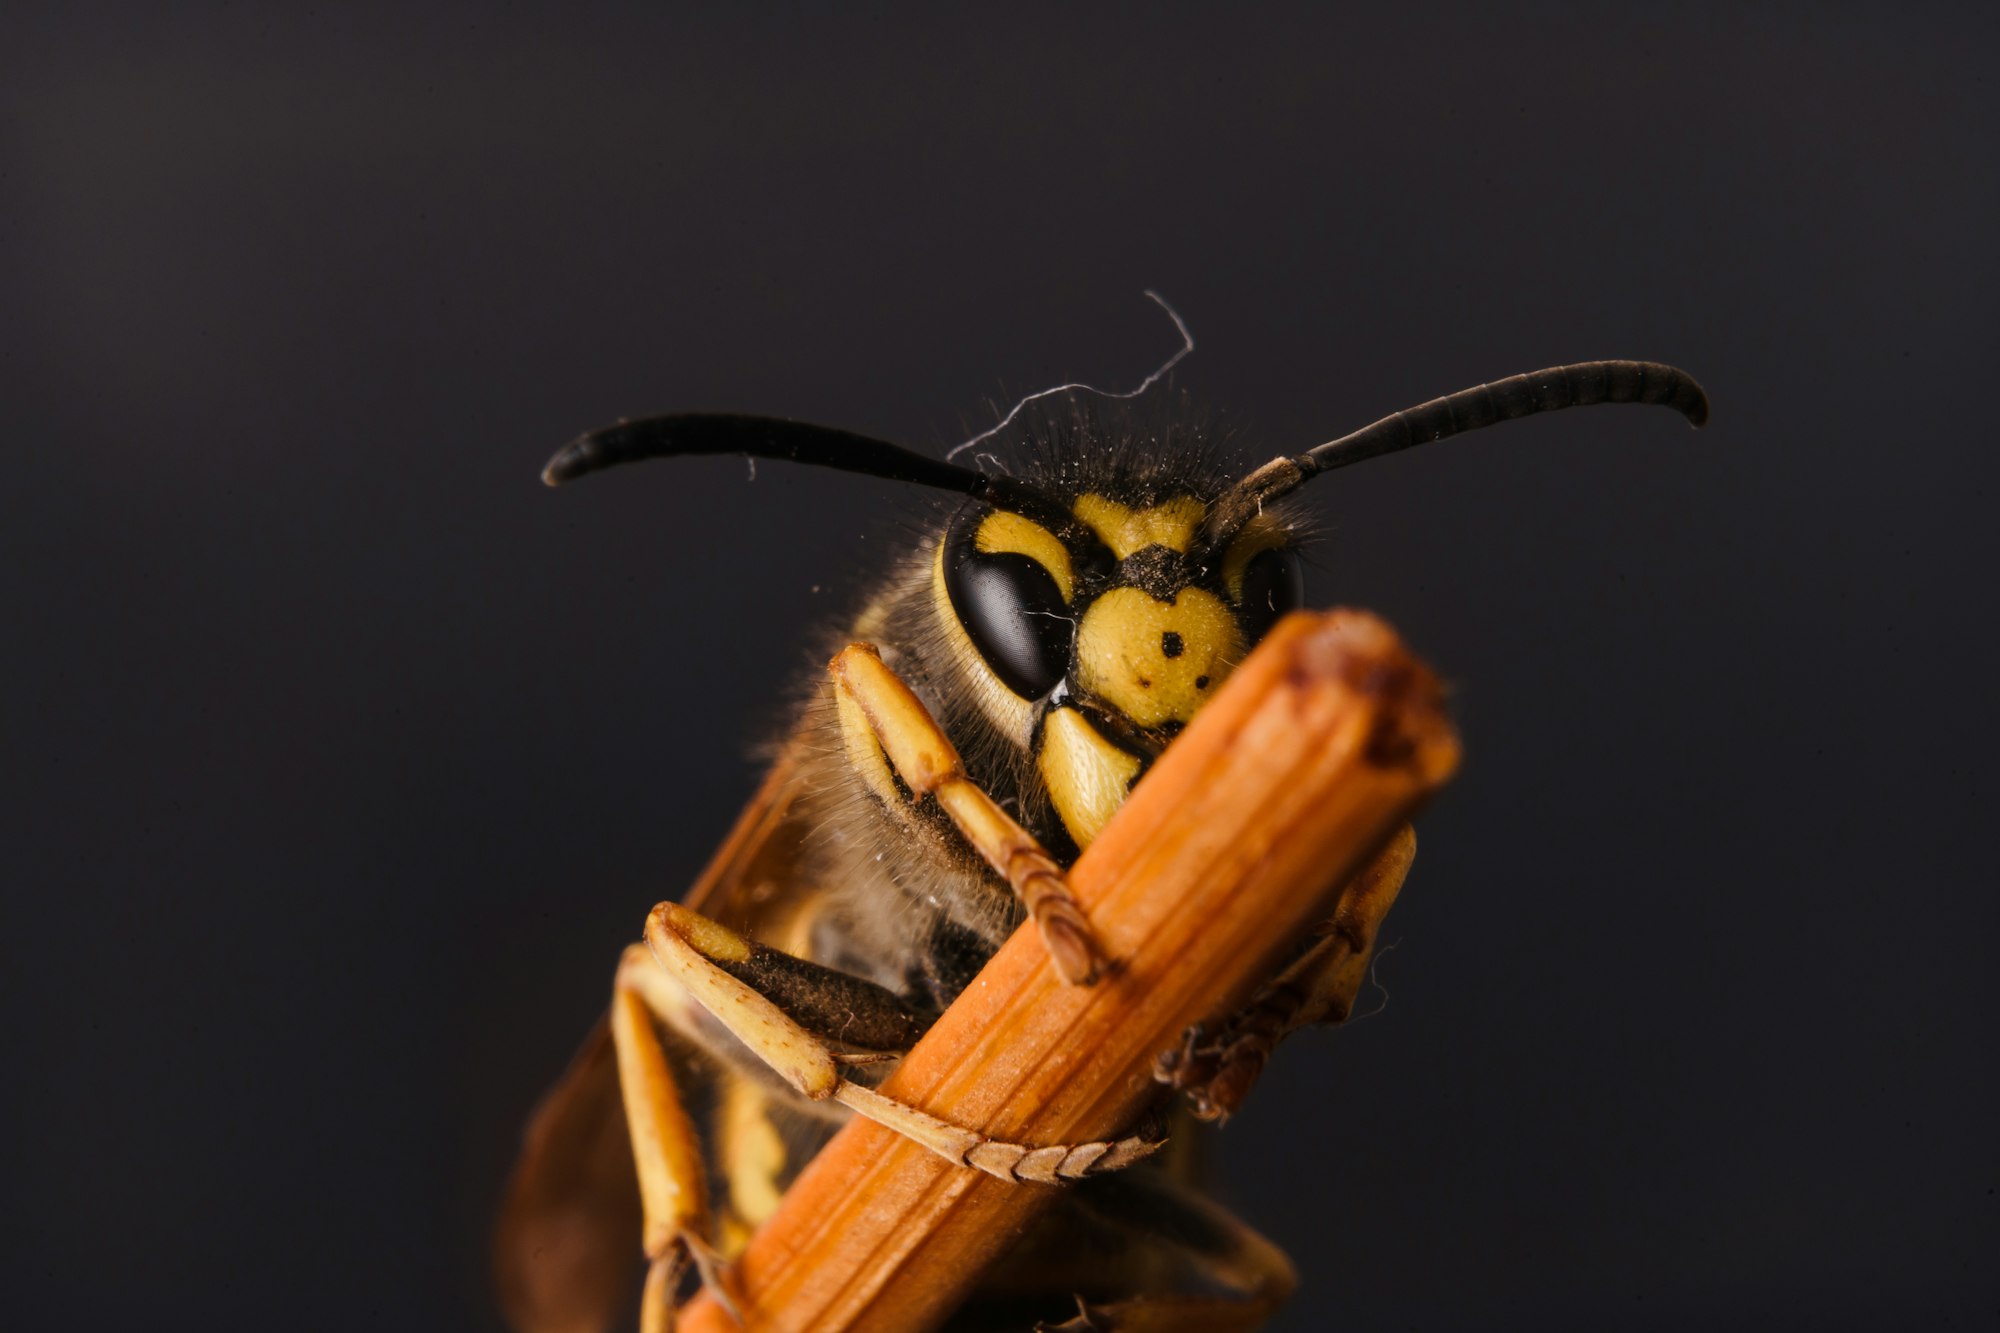 Closeup Shot of a Hornet on a Stick Behind a Dark Background